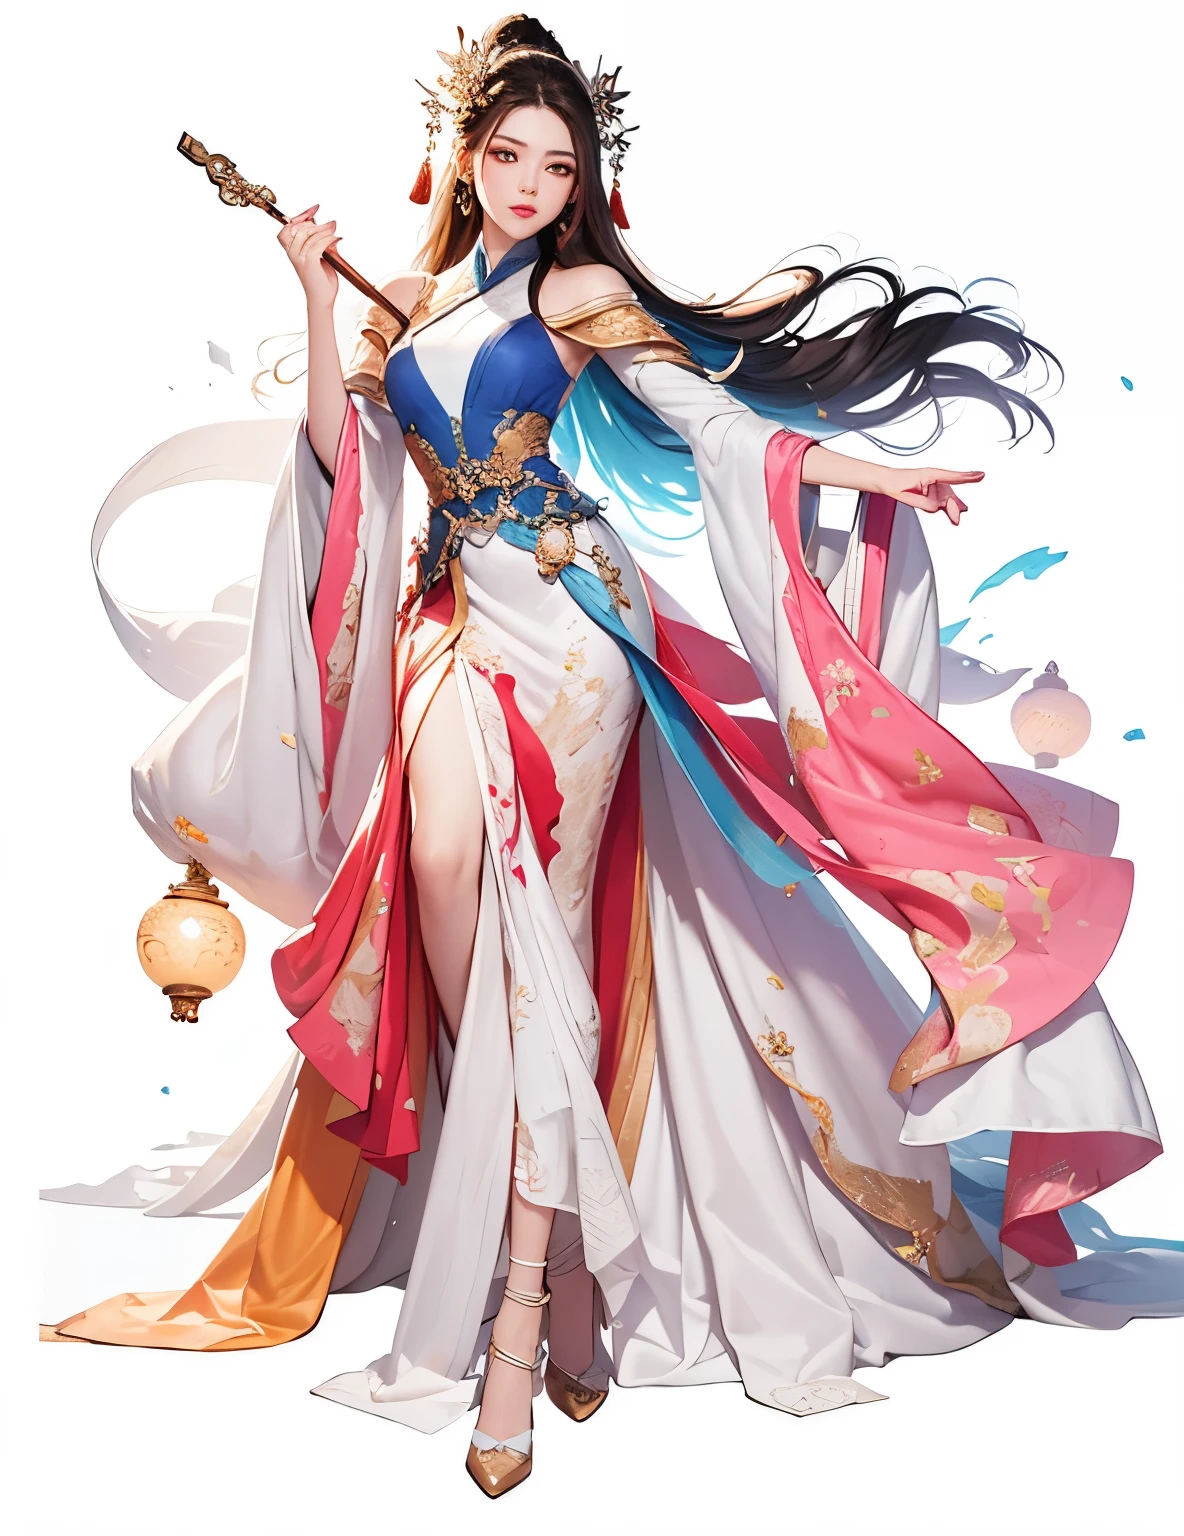 1 빨간색 드레스를 입고、흐르는 머리카락을 가진 소녀, 아름다운 판타지 여왕, 아름다움을 구하다,란잉에게서 영감을 받은 작품, 전신 시안샤, 쿠 레이레이(Qu Leilei), Zhu Lian에게서 영감을 받은 작품, 나무에서 영감을 받아, Qiu Ying에게 영감을 받아, 헤이세 진야오, 고대 중국 공주, 흐르는 머리카락과 가운, ((아름다운 판타지 여왕)),((풍부하고 다채로운)),(당나라), 걸작, 최고의 품질, 아름다운 그림, high level of 세부 사항,(소음을 제거하다 :0.6), [잉크 증명],(잉크 굴절), ,세부 사항,빈 배경,(최고의 품질,  extremely 세부 사항ed CG unified 8k wallpaper, 실력, 최고의 품질, super 세부 사항),(깜박이는 푸른 빛),실크로 감싼 상체,((((예쁜 얼굴)))